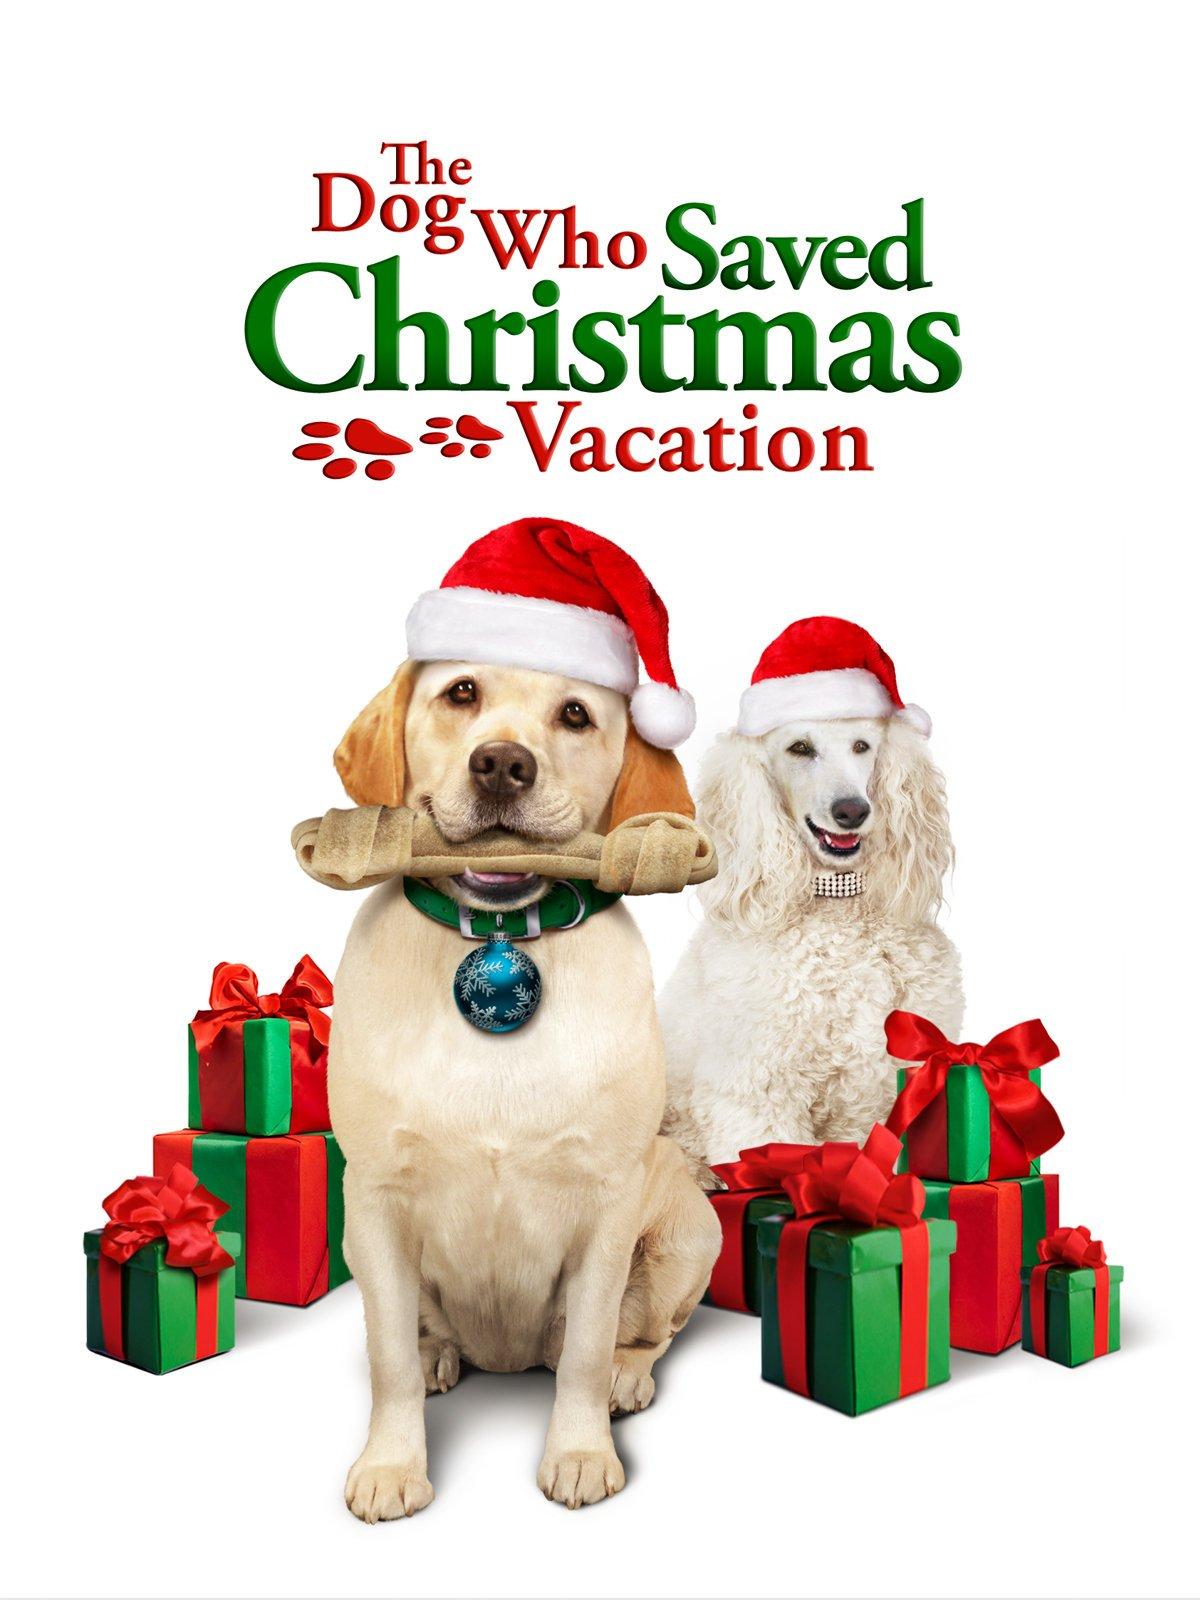 Watch The Dog Who Saved Christmas